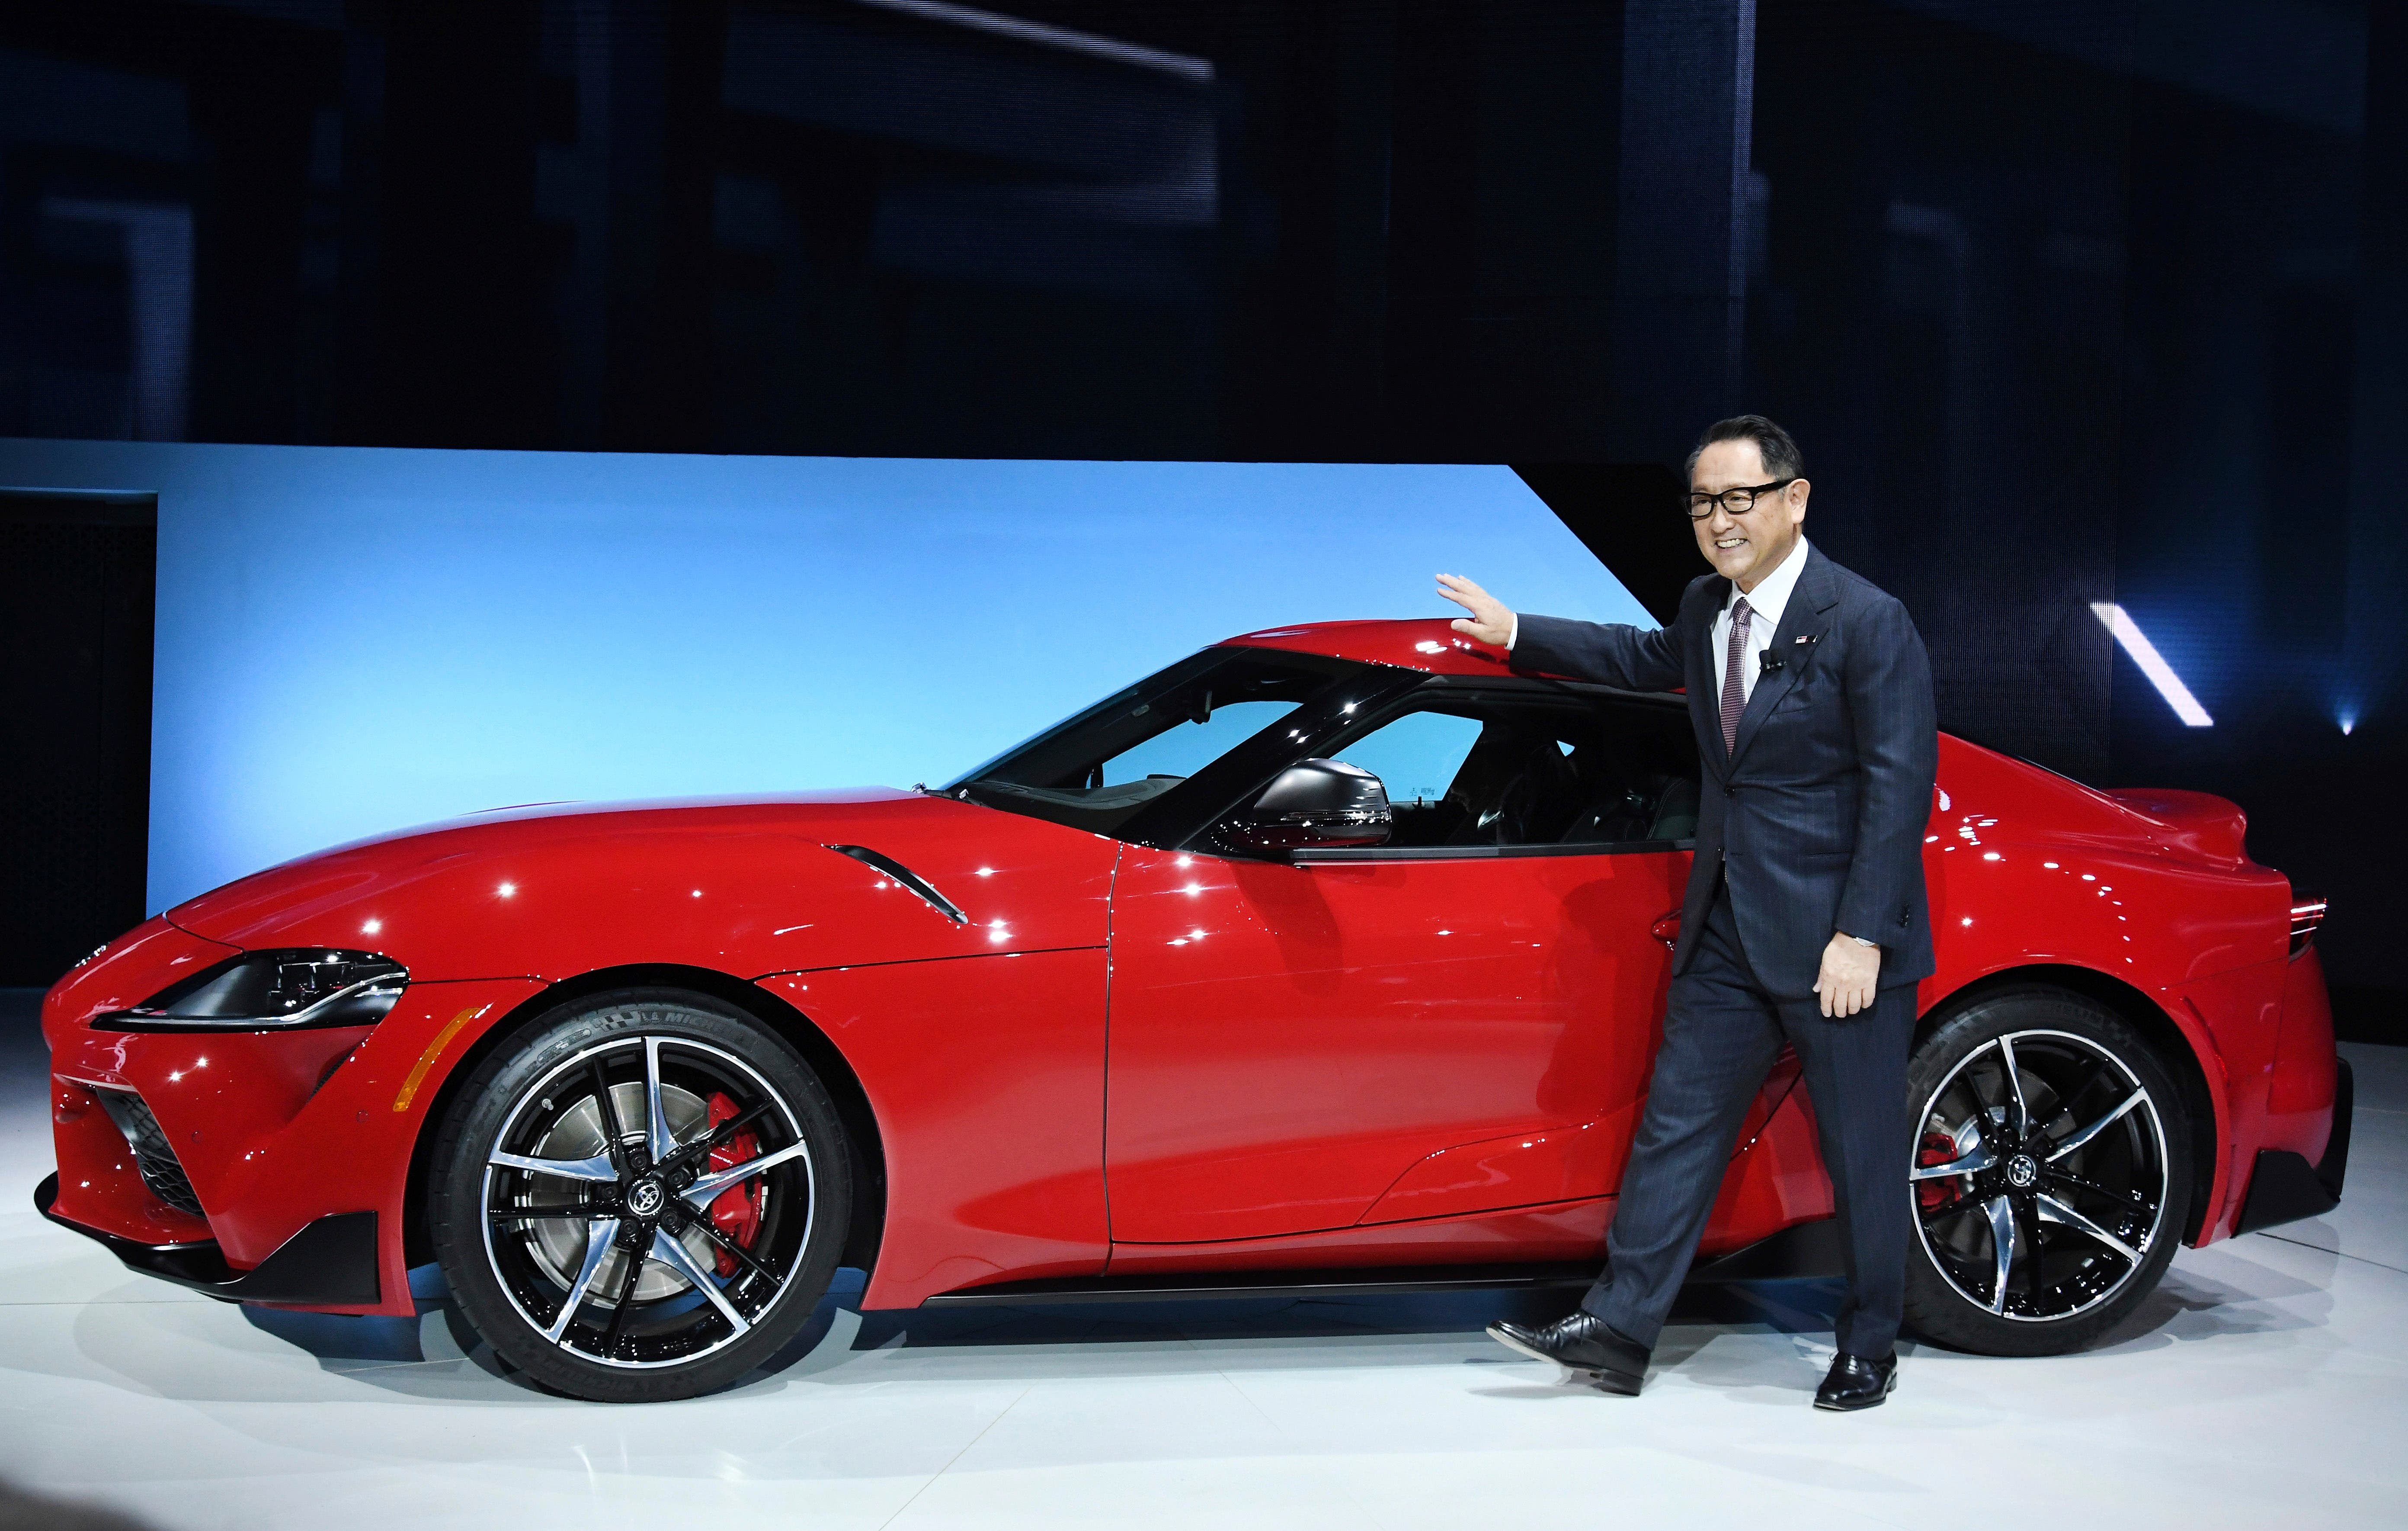 Toyota revive en el Salón de Detroit el icónico deportivo biplaza Supra